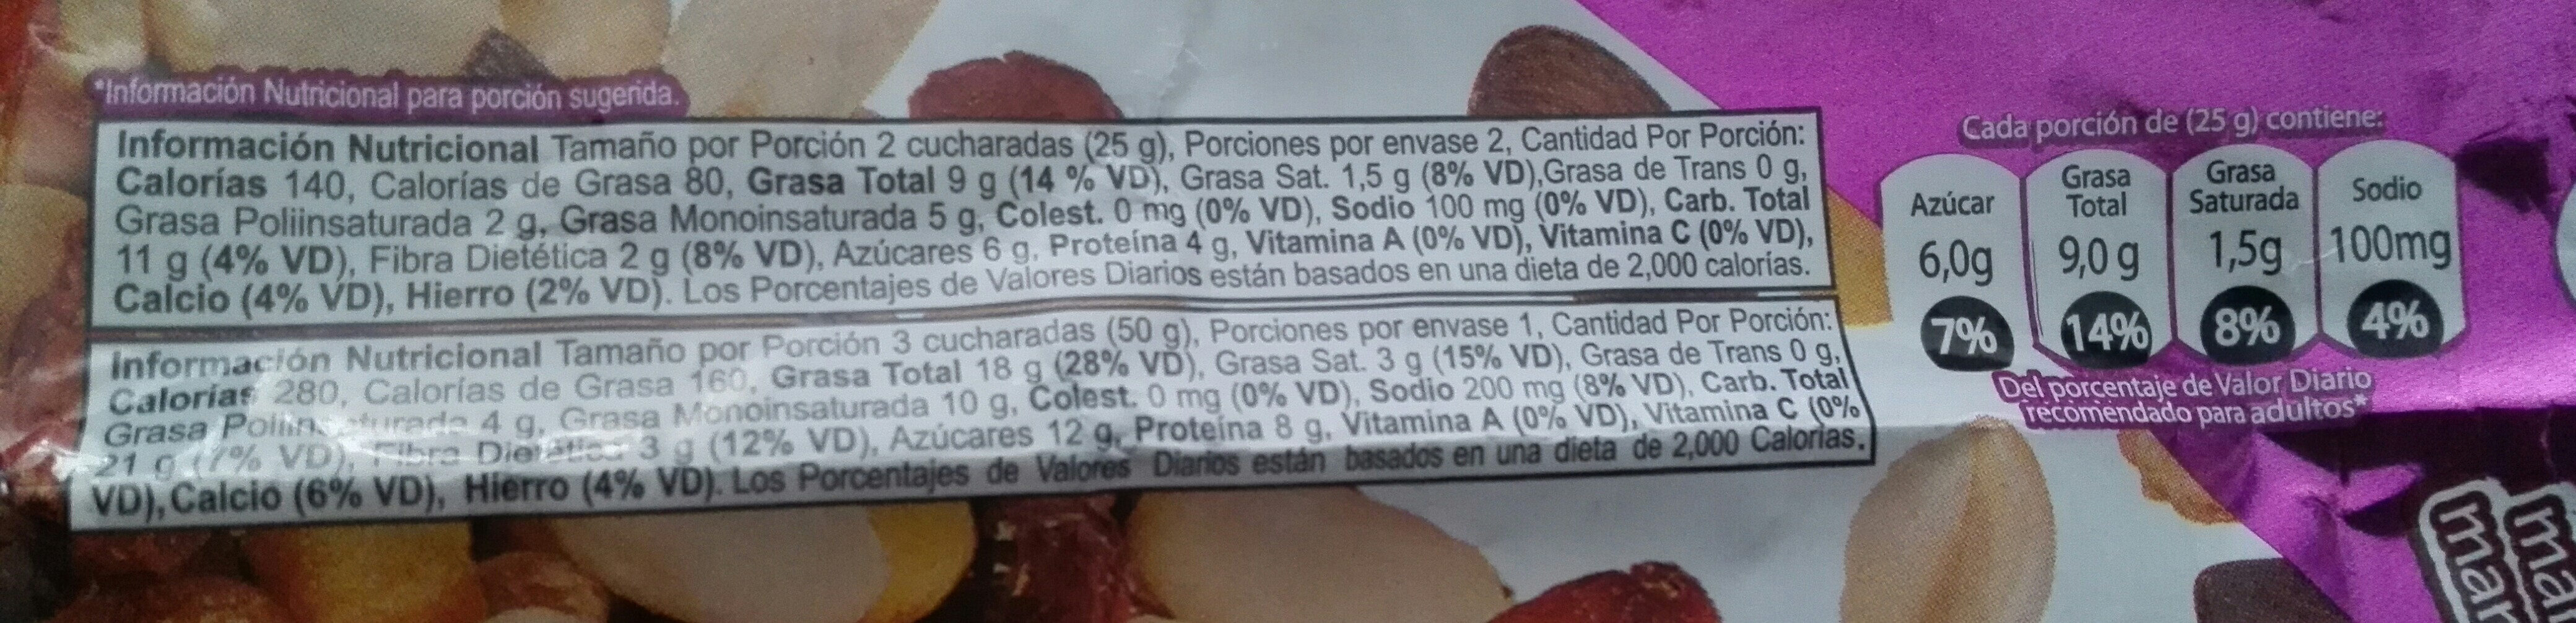 La Especial Mezcla de Maní con Sal, Maíz Tostado, Maní Confitado, Almendras y Arándanos - Nutrition facts - es